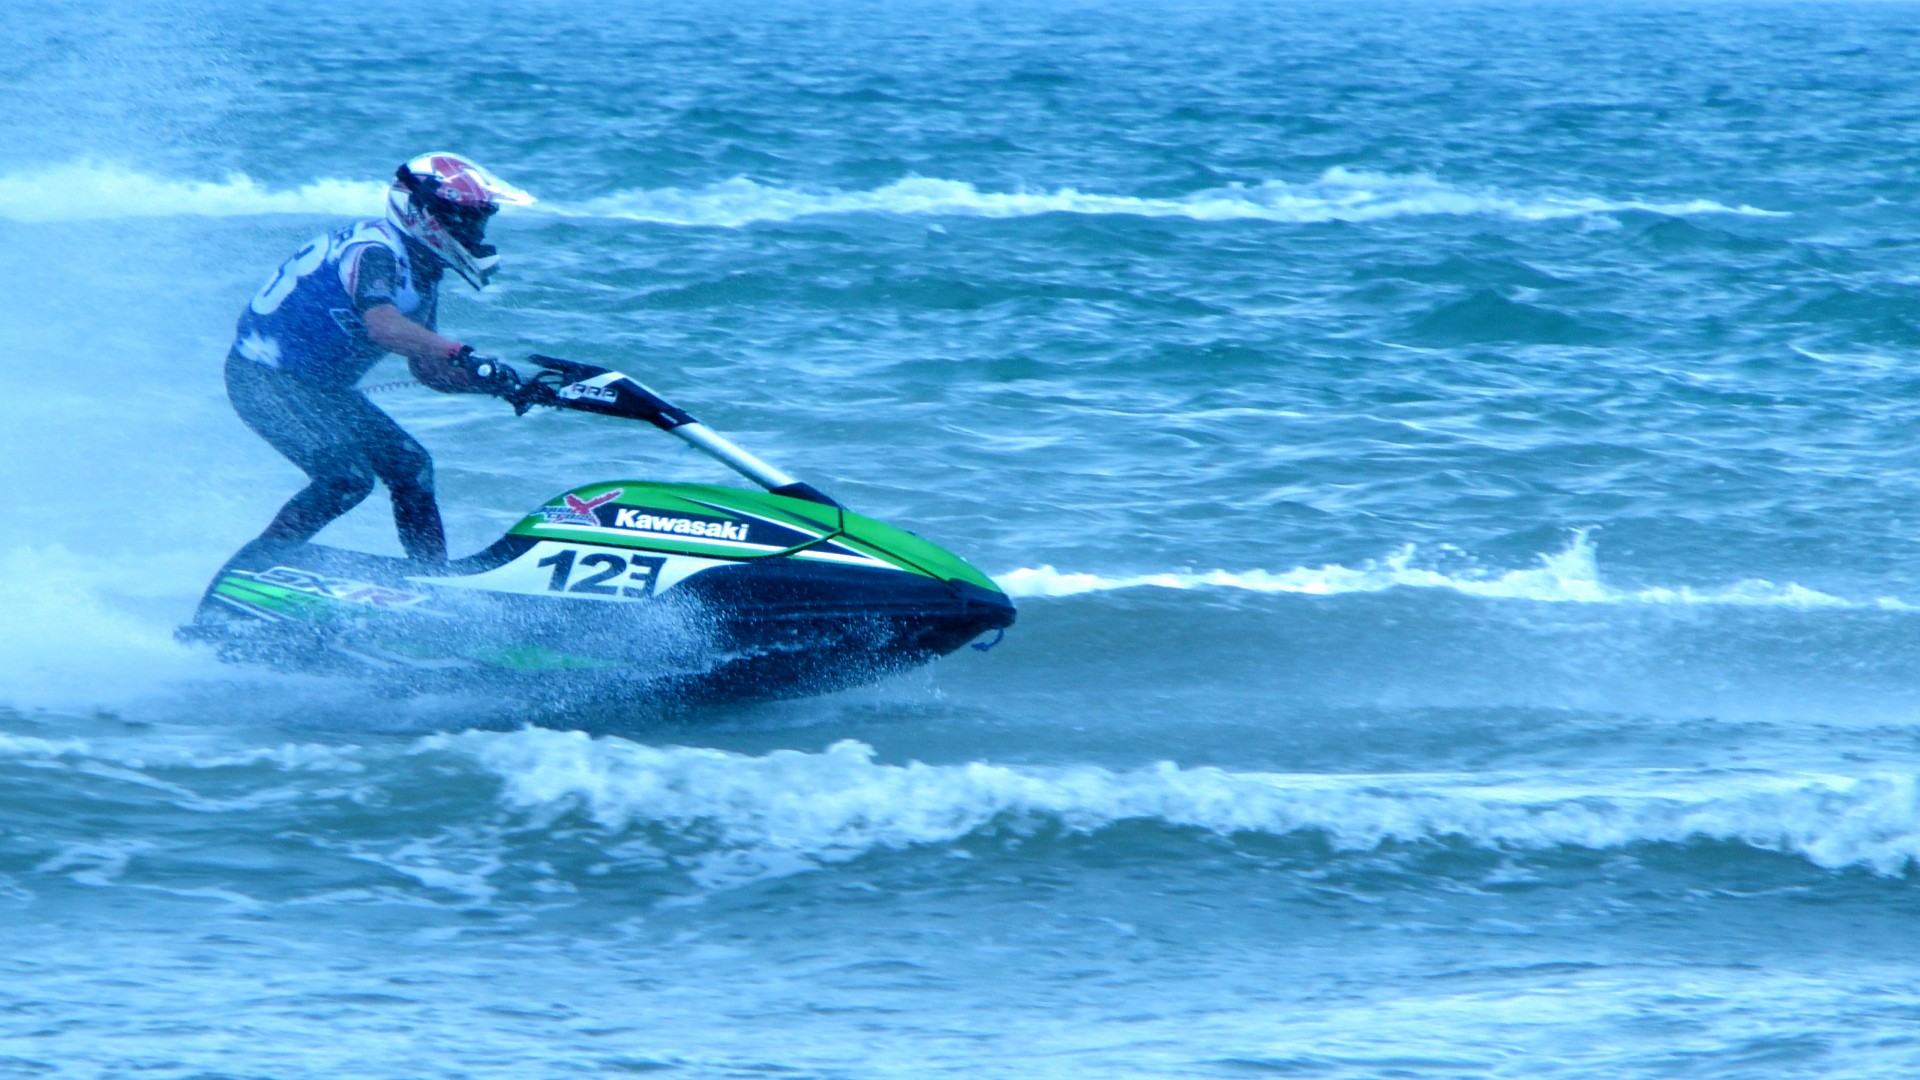 Download Jet Ski Jet Skier Water Skiing Free Photo.